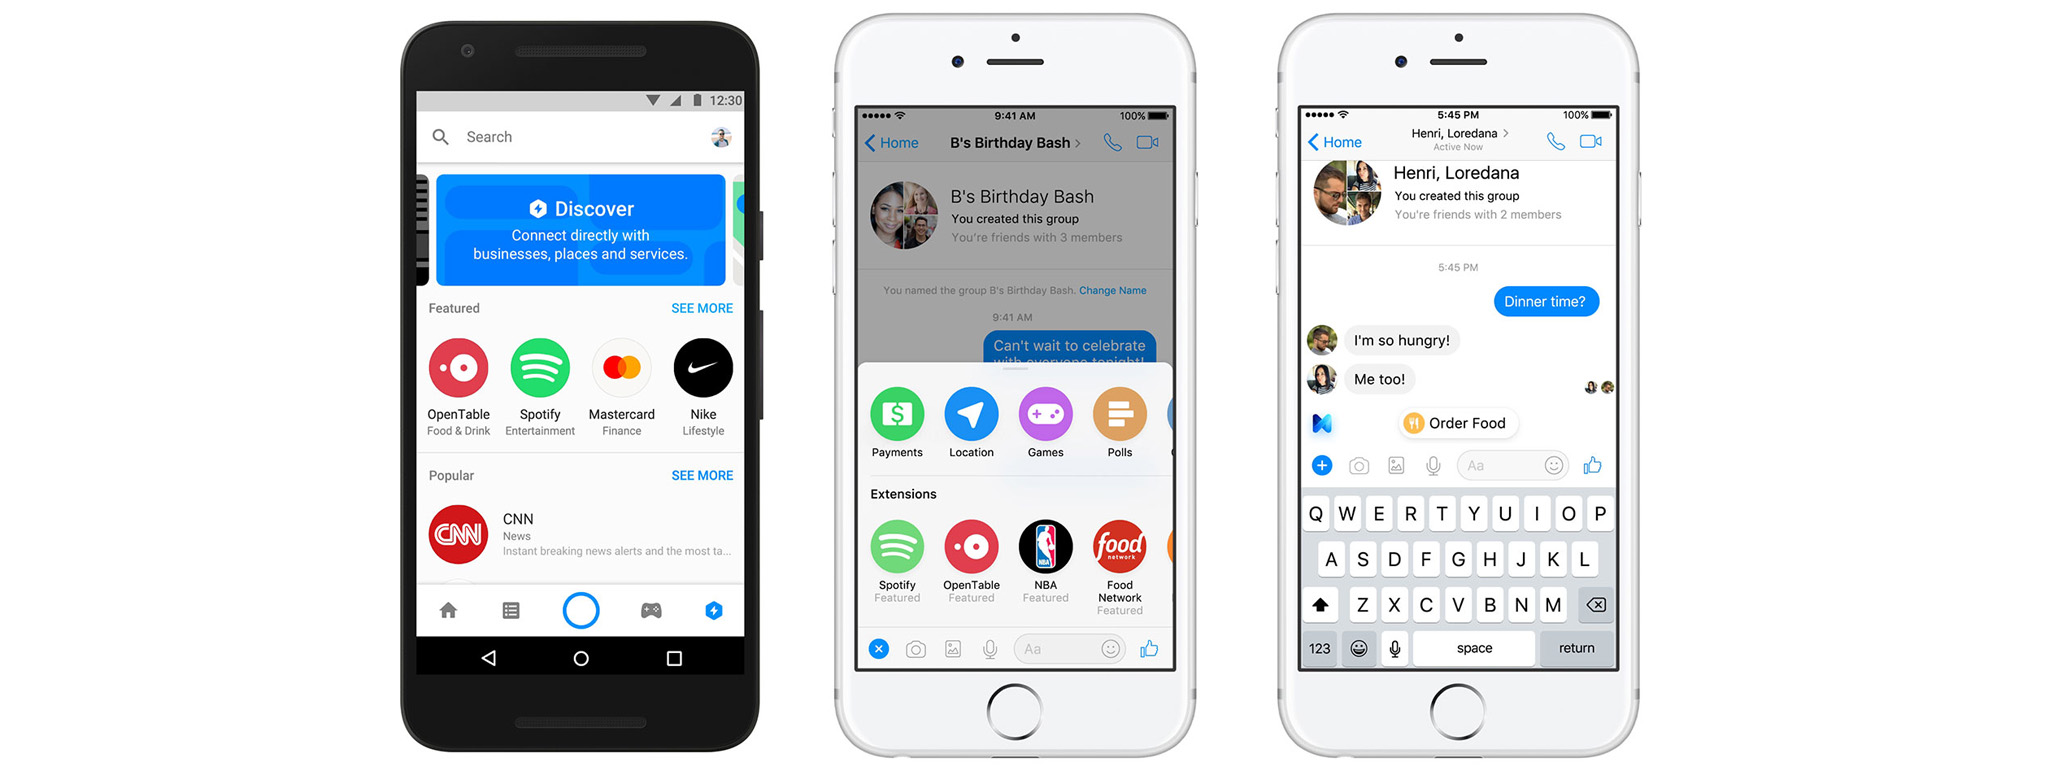 [F8] Facebook nâng cấp Messenger: có Bot Appstore, Extension, M biết gợi ý, mã QR, Game